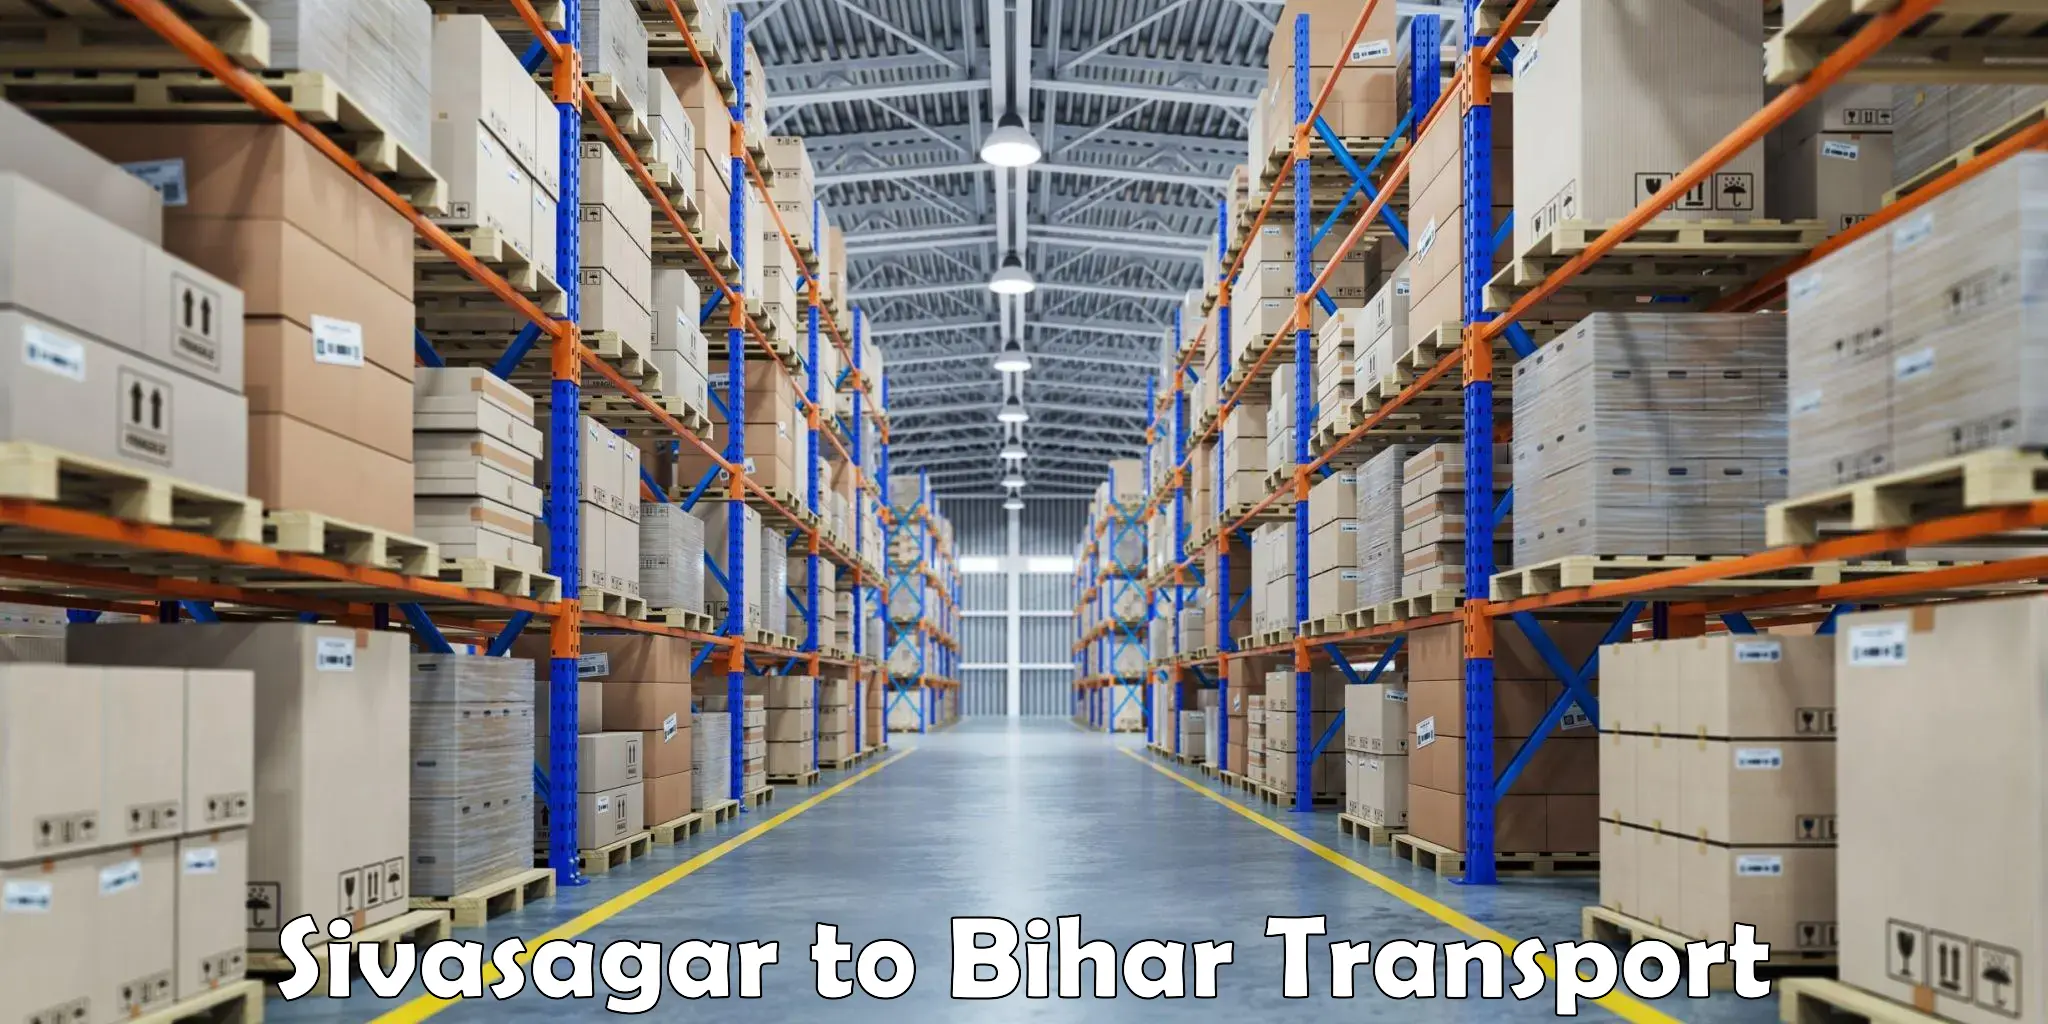 Shipping services Sivasagar to Sheonar